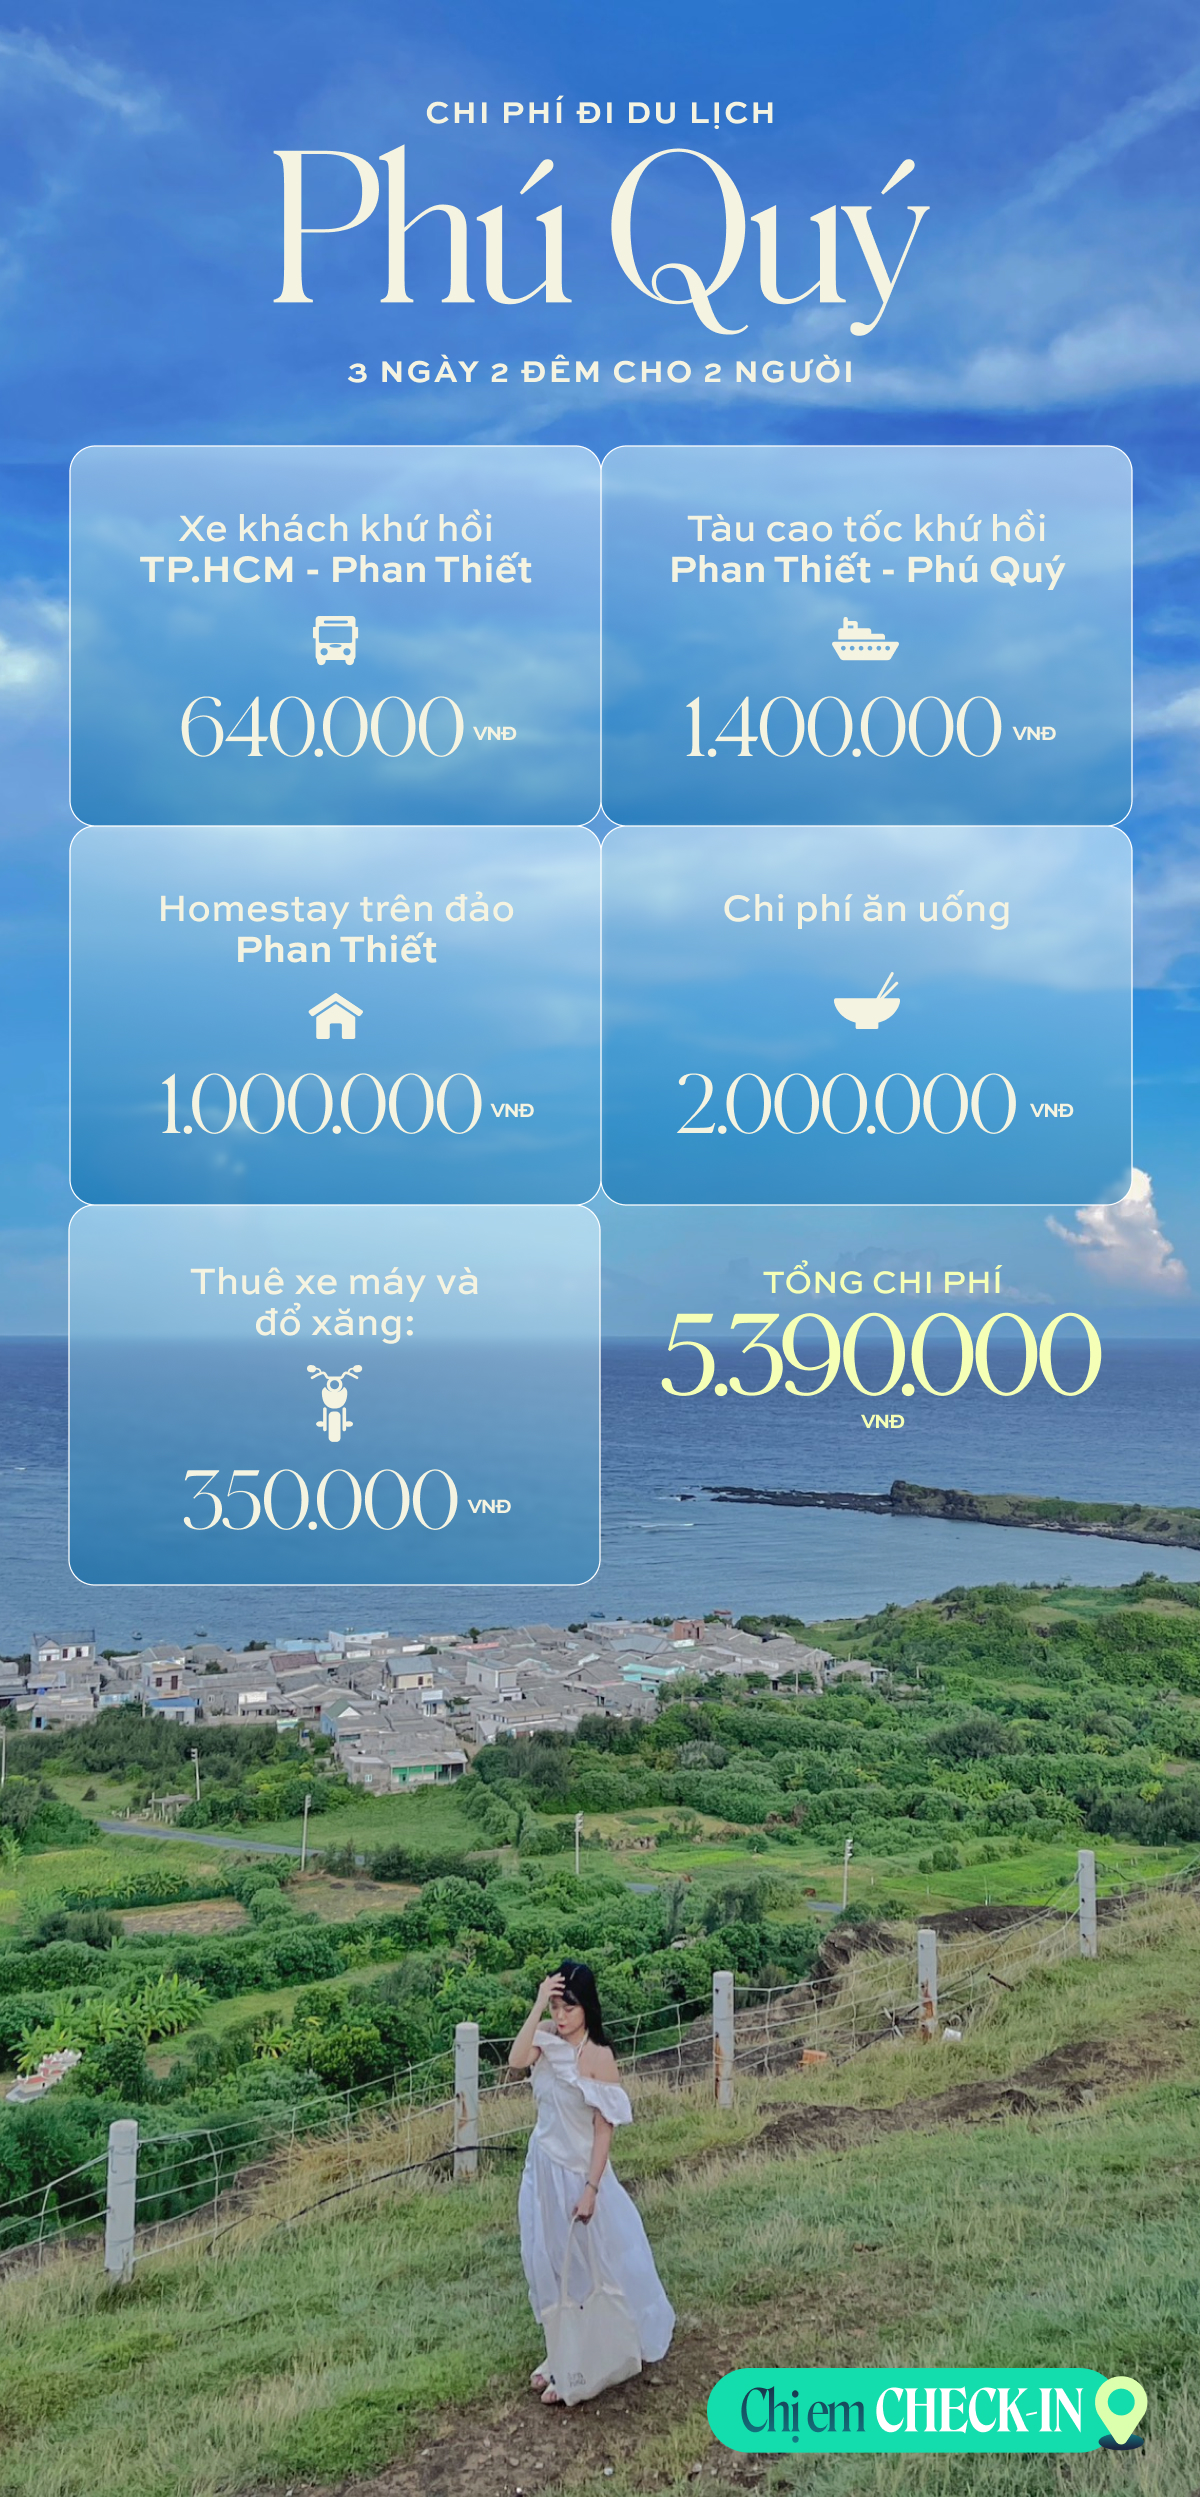 Đi du lịch đảo Phú Quý chỉ hơn 2 triệu/người mà có cả đống ảnh check-in siêu đẹp và đây là lịch trình để để chị em tham khảo - Ảnh 13.